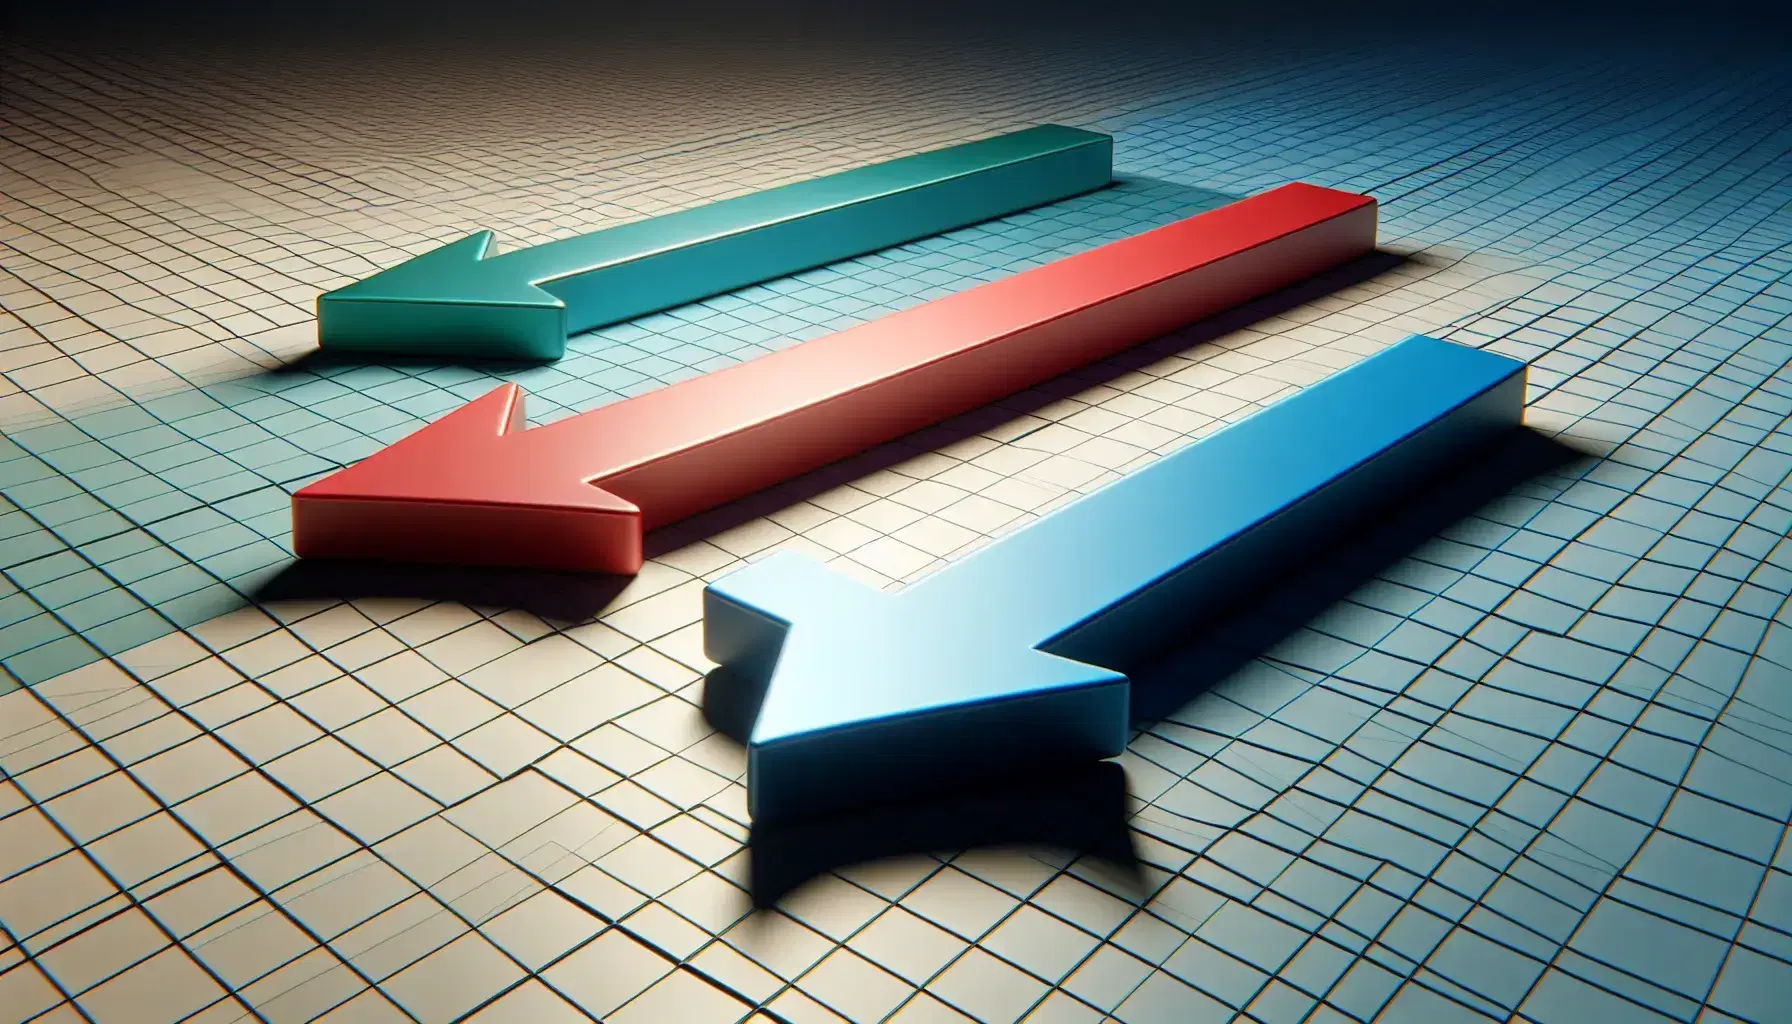 Flechas tridimensionales en azul, rojo y verde apuntando en distintas direcciones sobre fondo de malla gris en perspectiva.